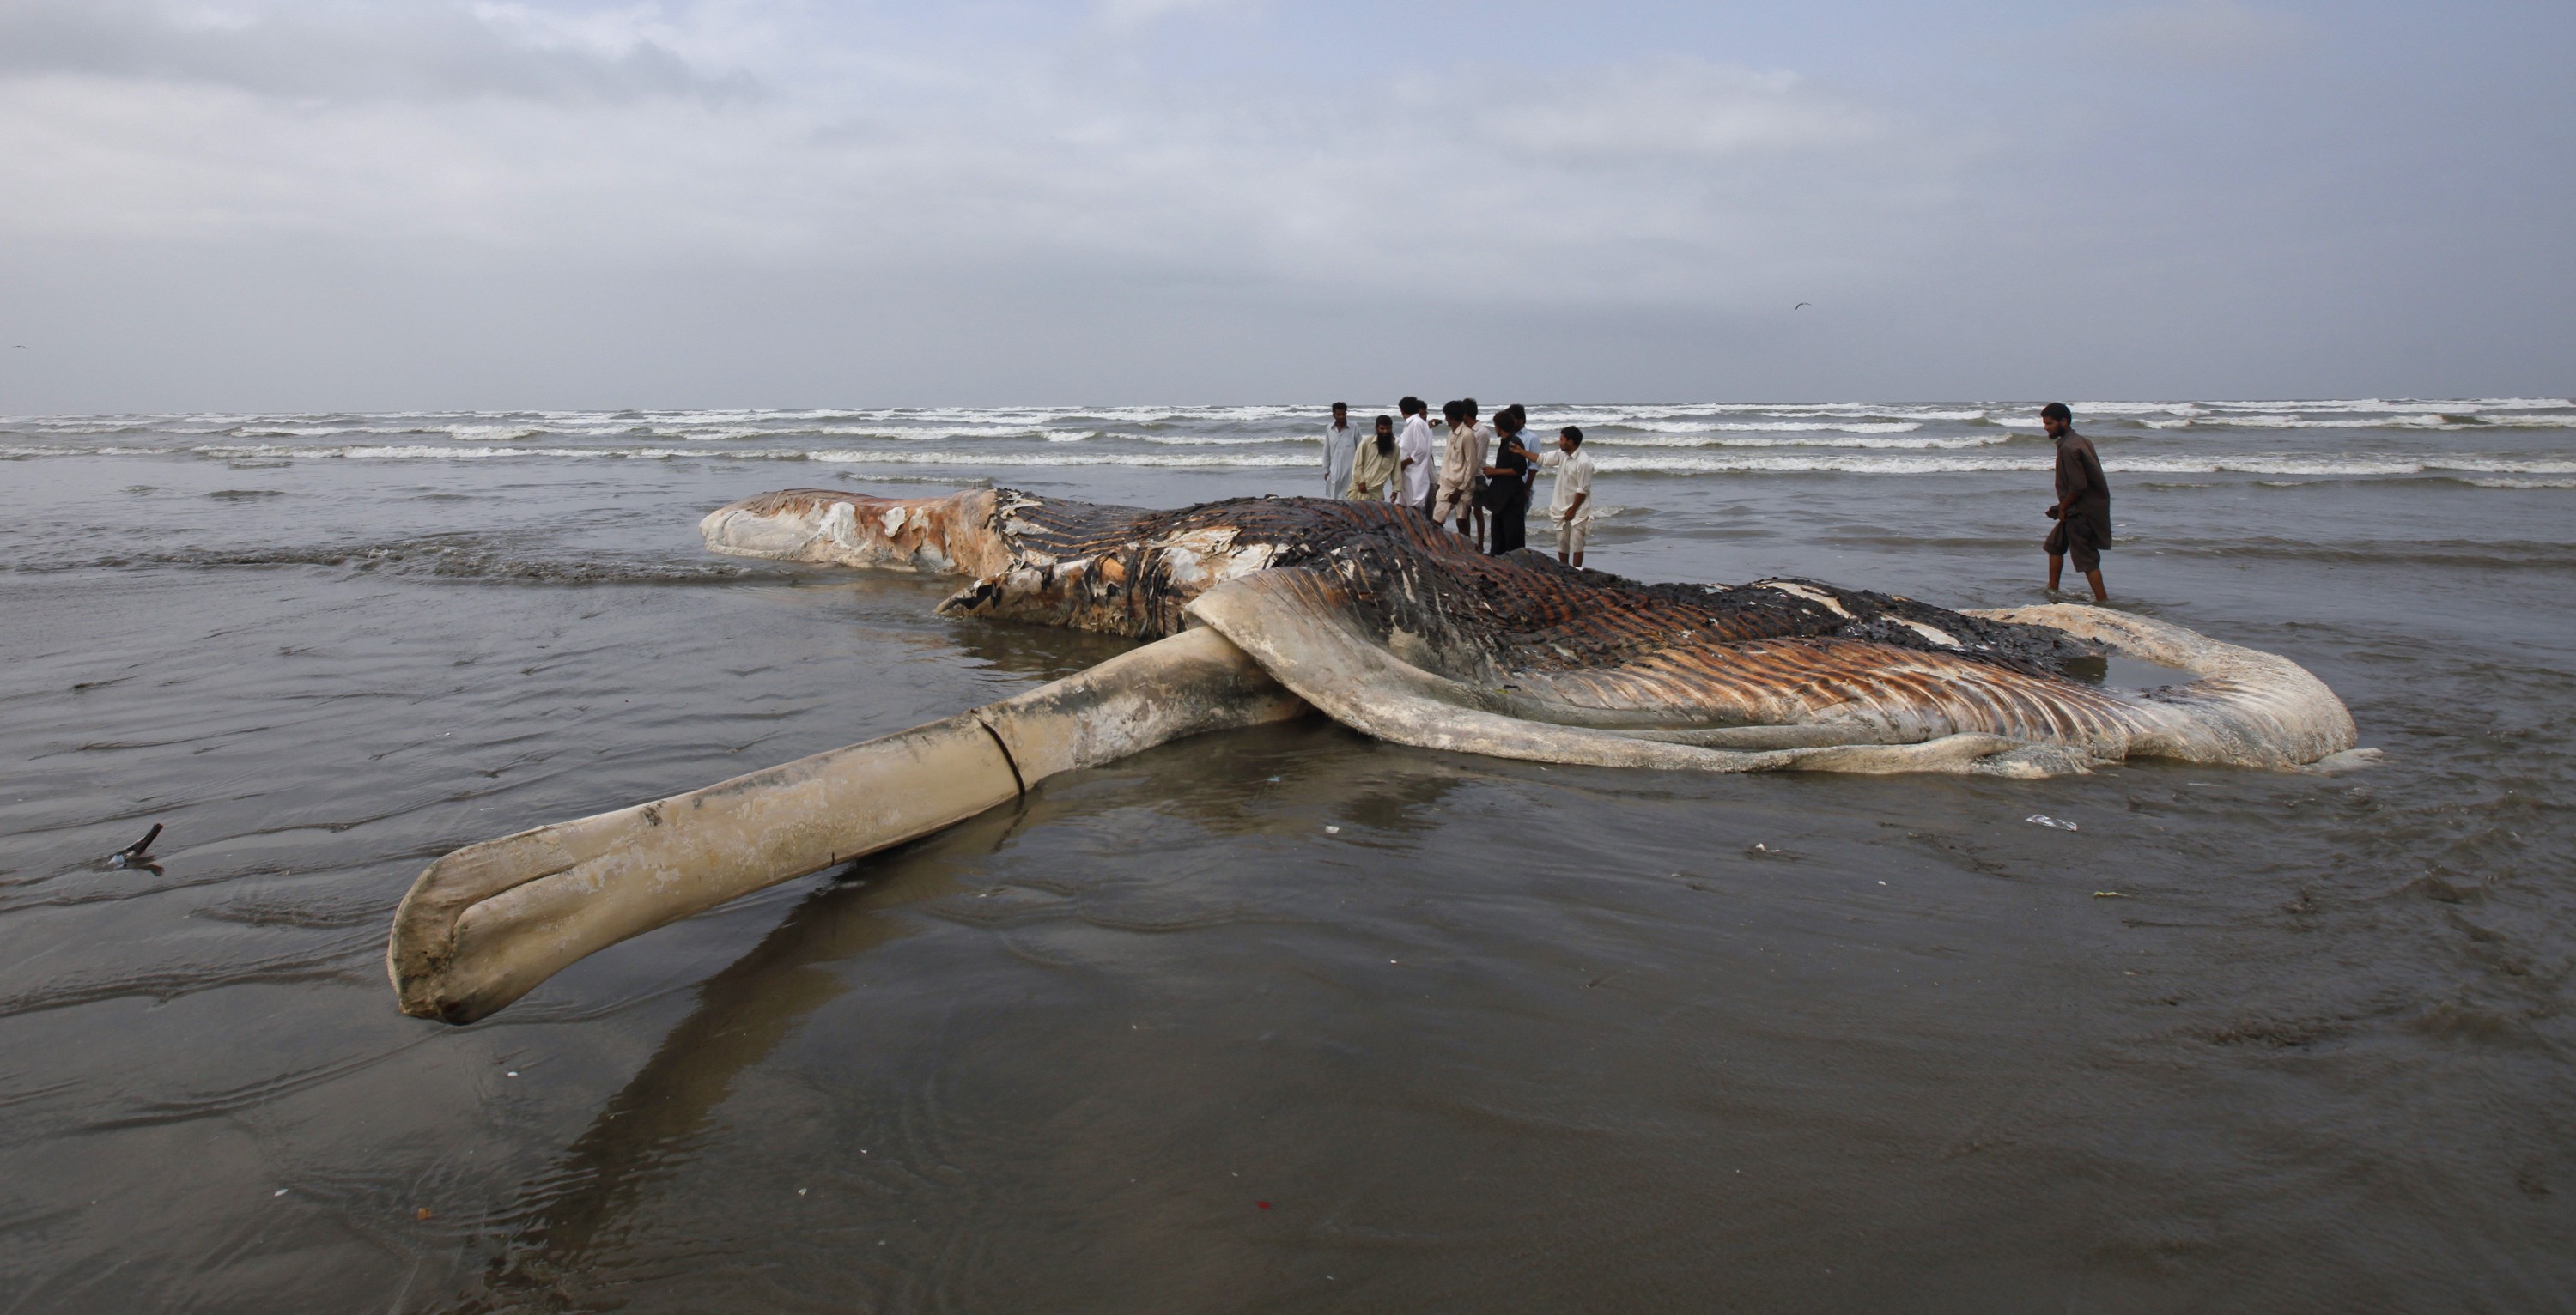 A carcaça do mamífero aquático foi encontrada na manhã desta terça-feira (20) em uma praia da cidade de Karachi, no Paquistão (Foto: Athar Hussain /Reuters)